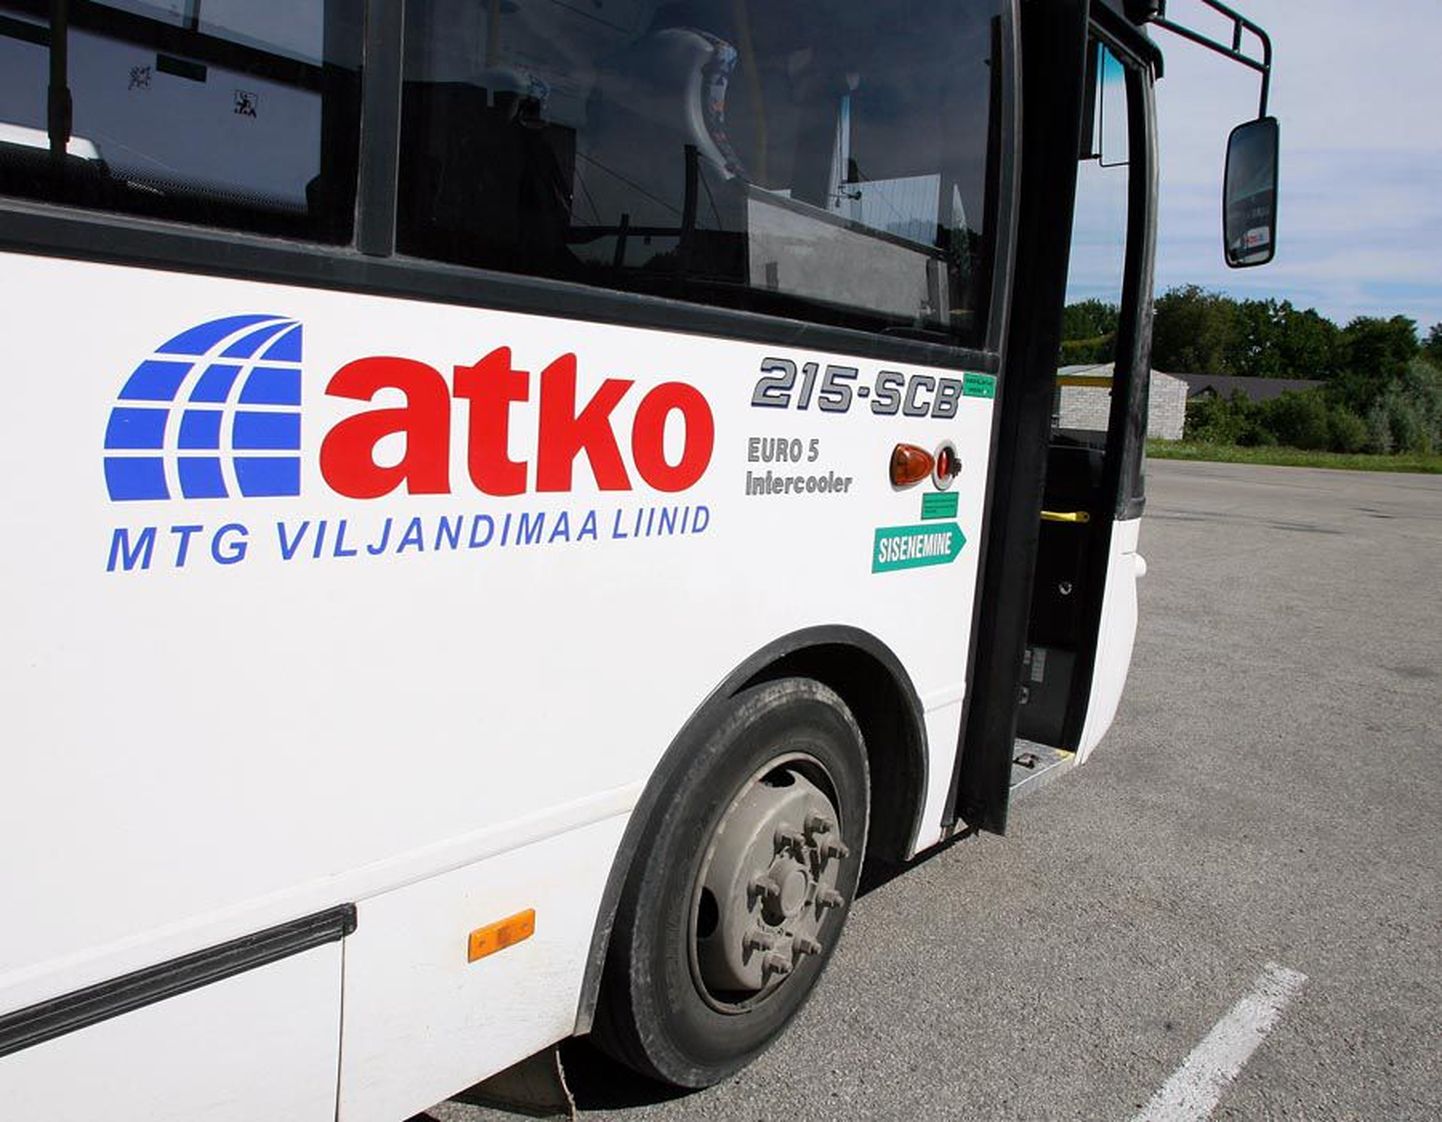 Atko Gruppi kuuluvad bussid sõidutavad inimesi Viljandis ja selle lähiümbruses ning Põhja-Viljandimaal.